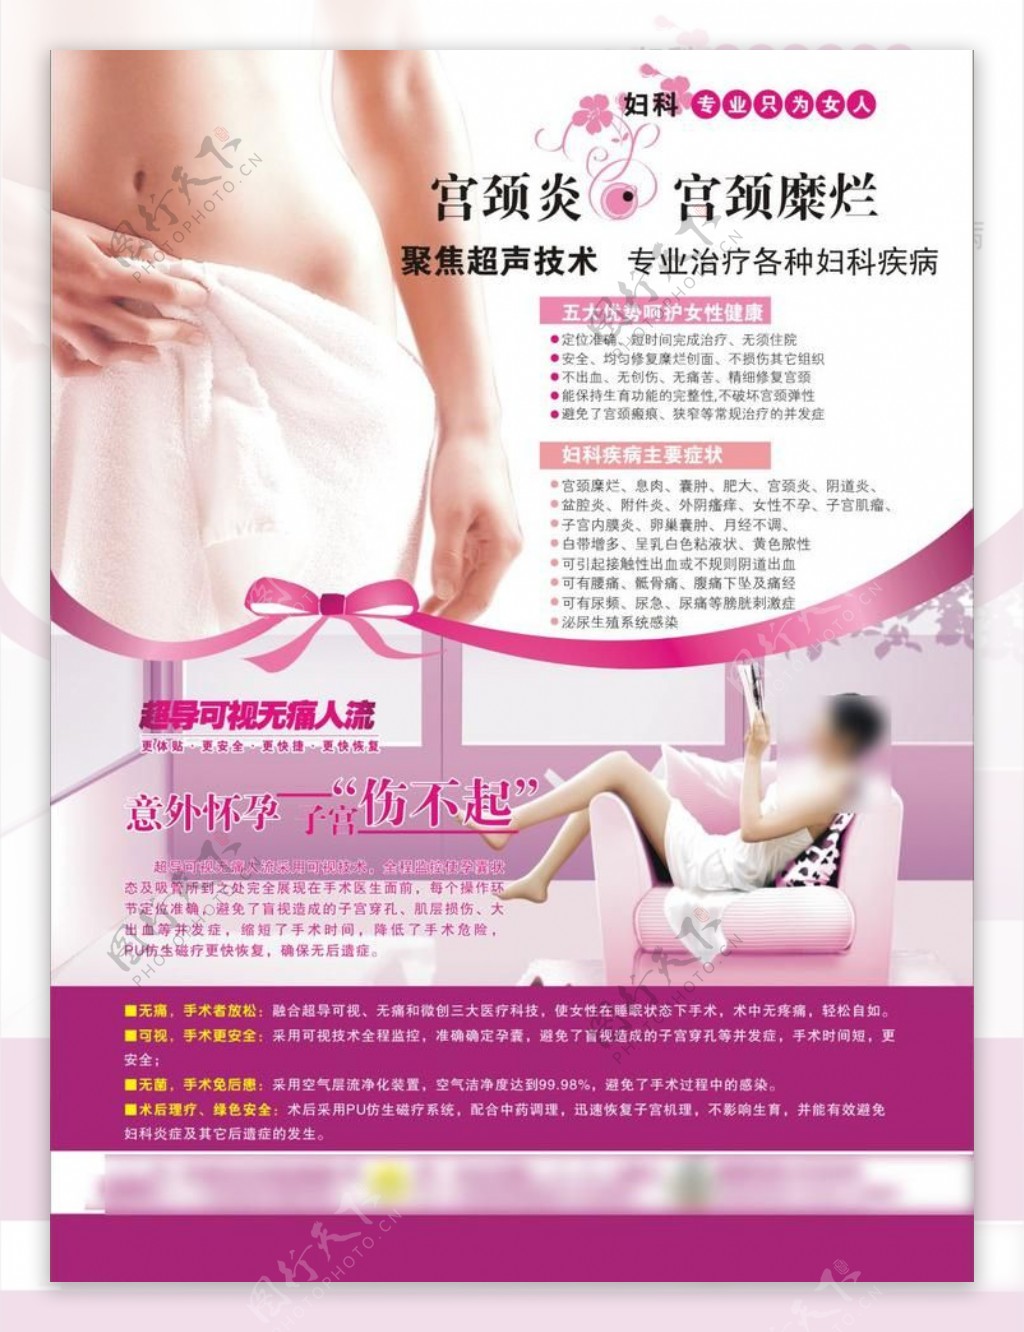 宫颈医疗广告图片